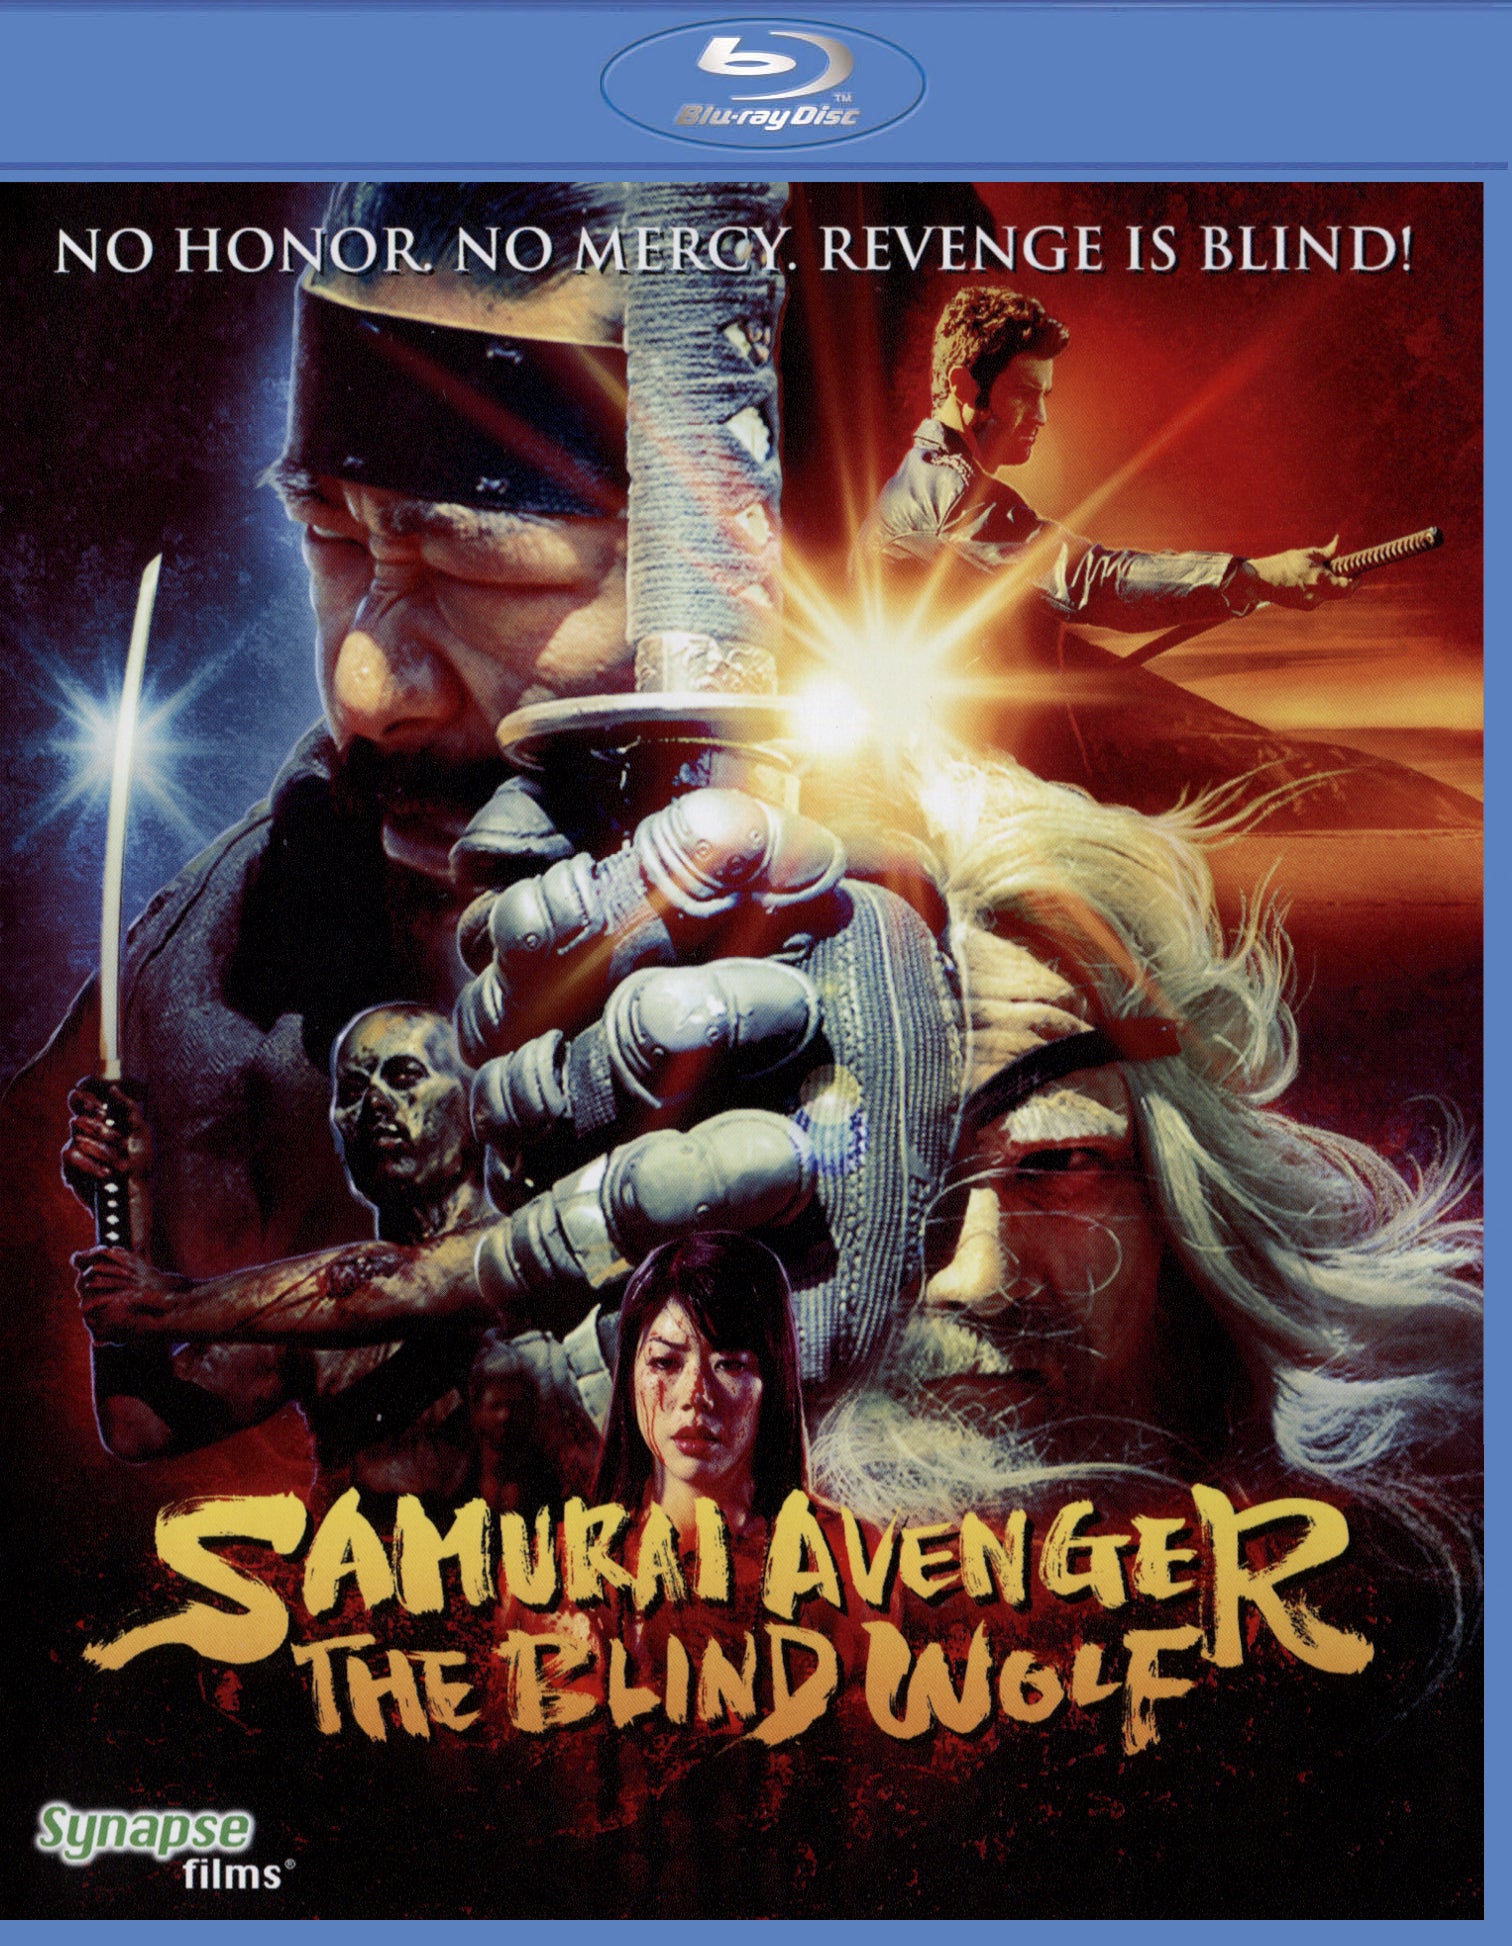 Samurai Avenger: The Blind Wolf [Blu-ray] cover art